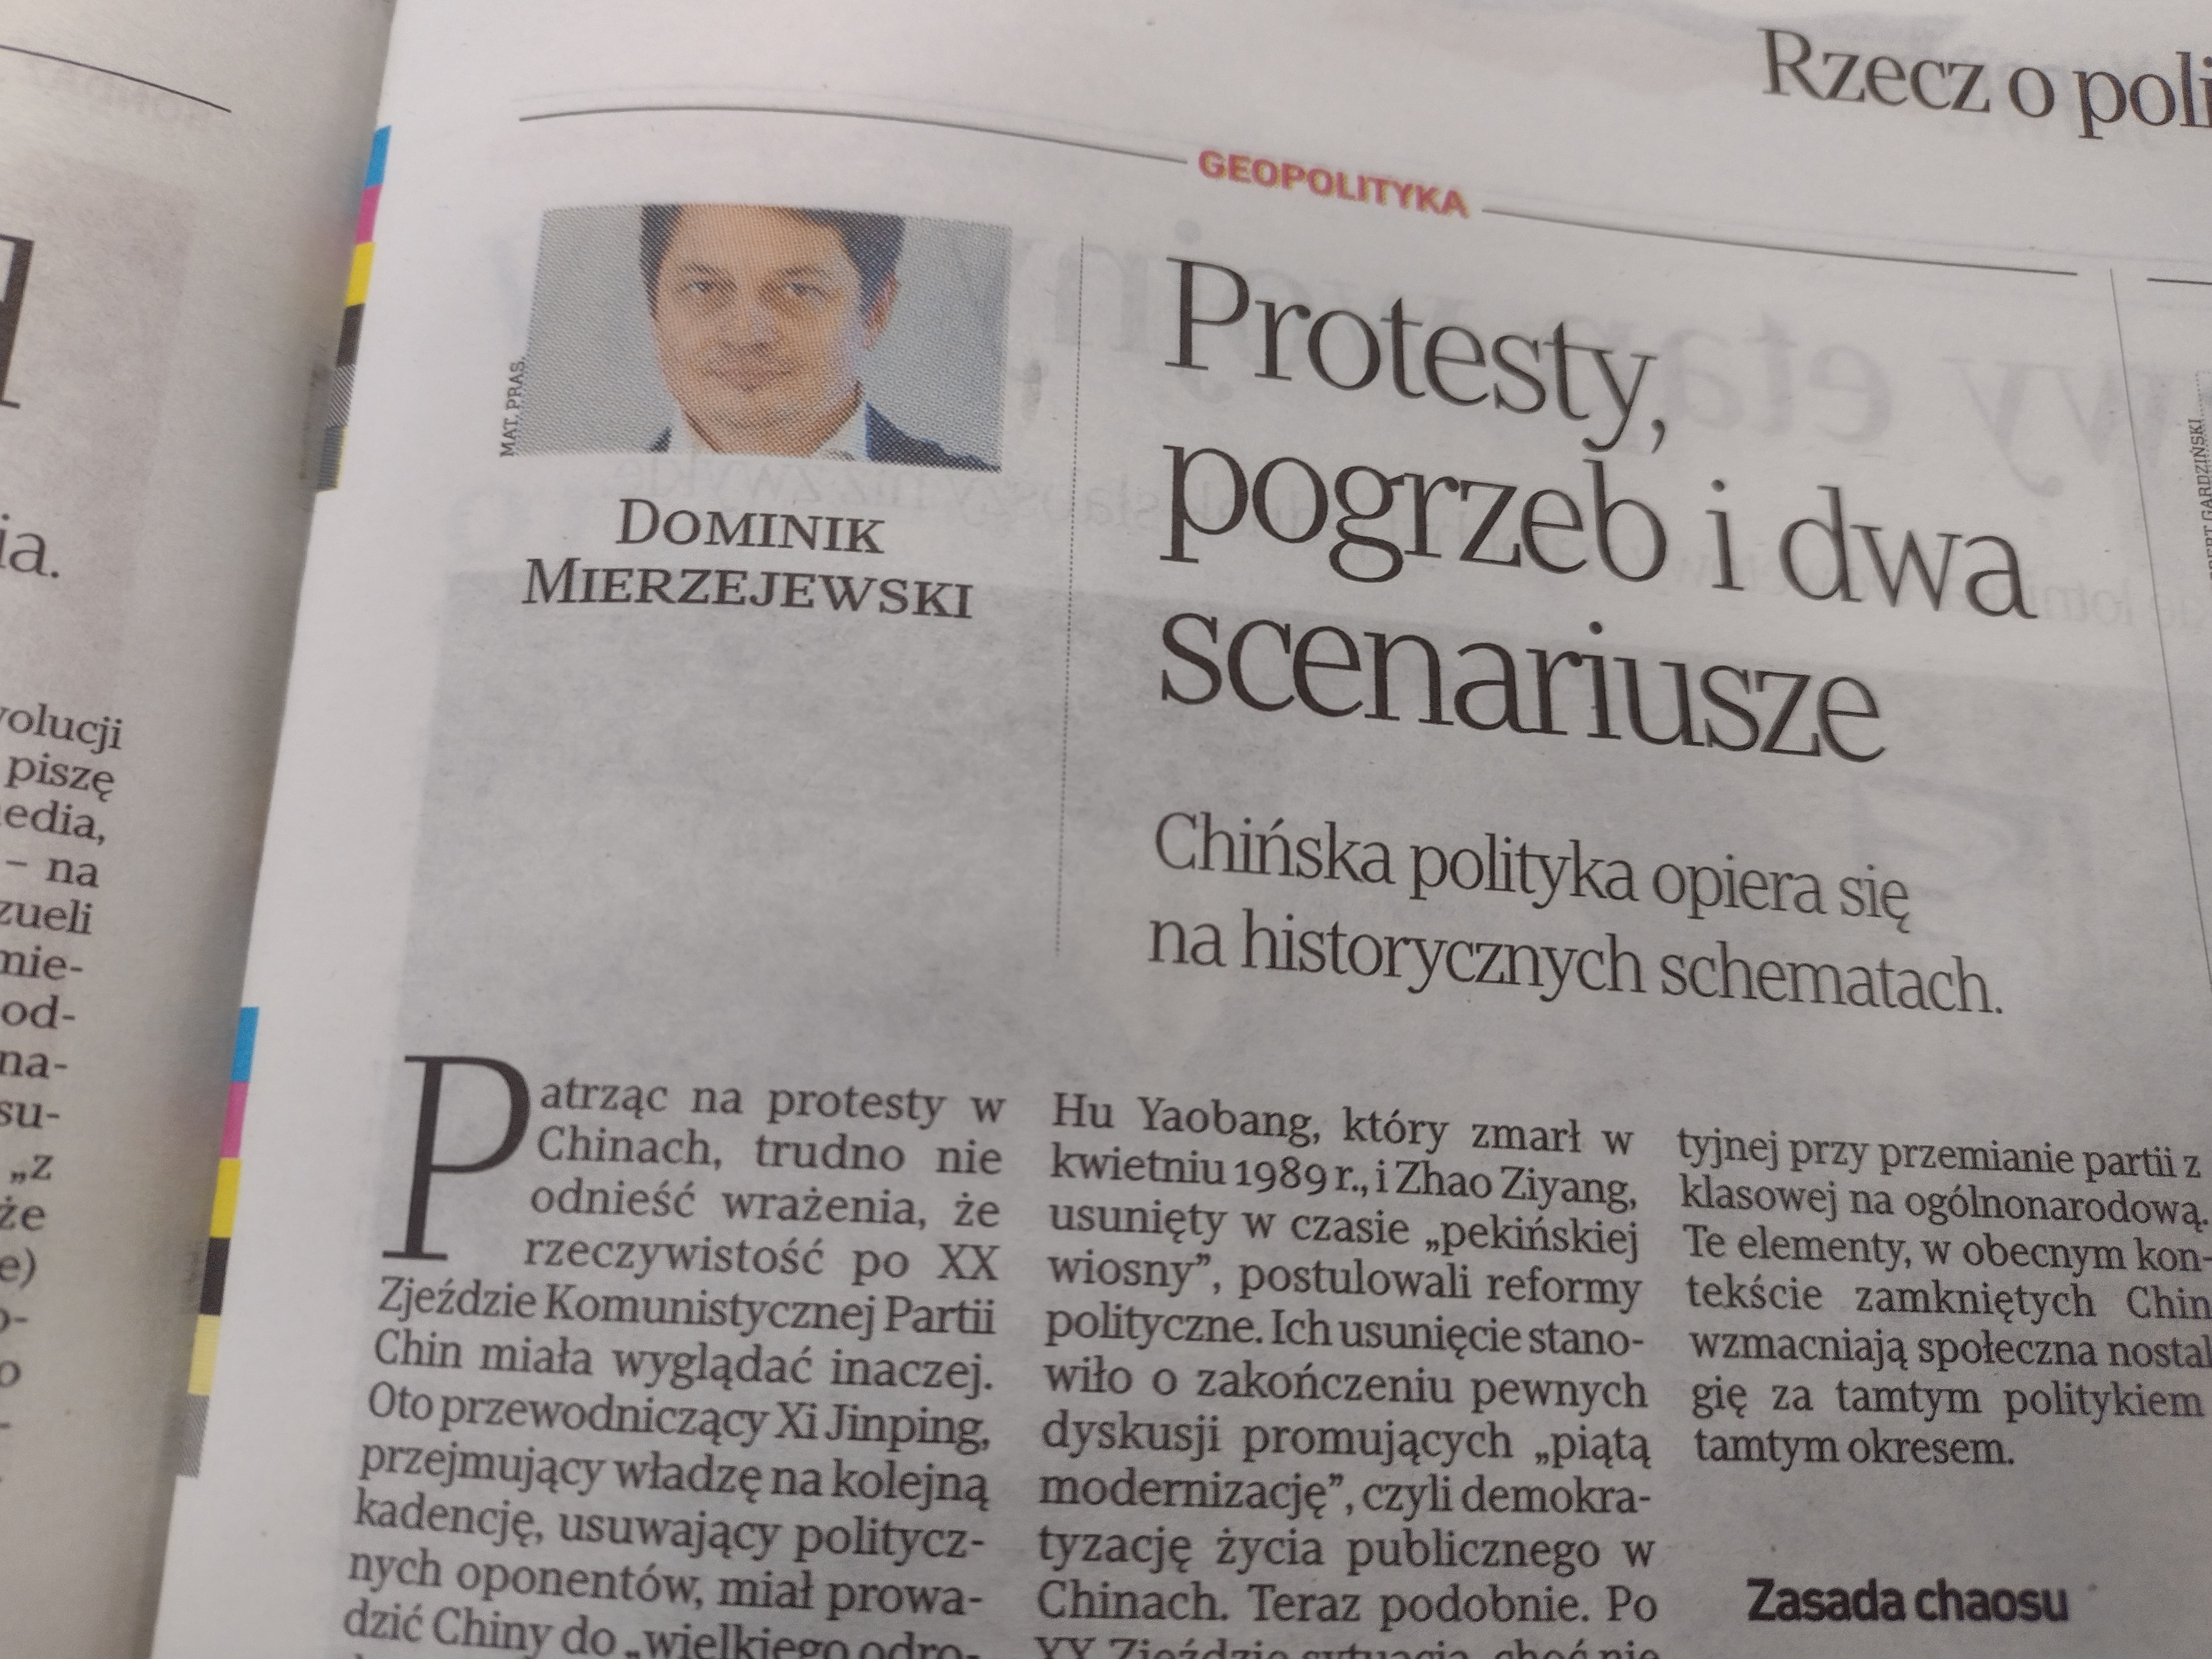 Zdjęcie artykułu w dzienniku Rzeczpospolita/Photo of an article in the Rzeczpospolita daily